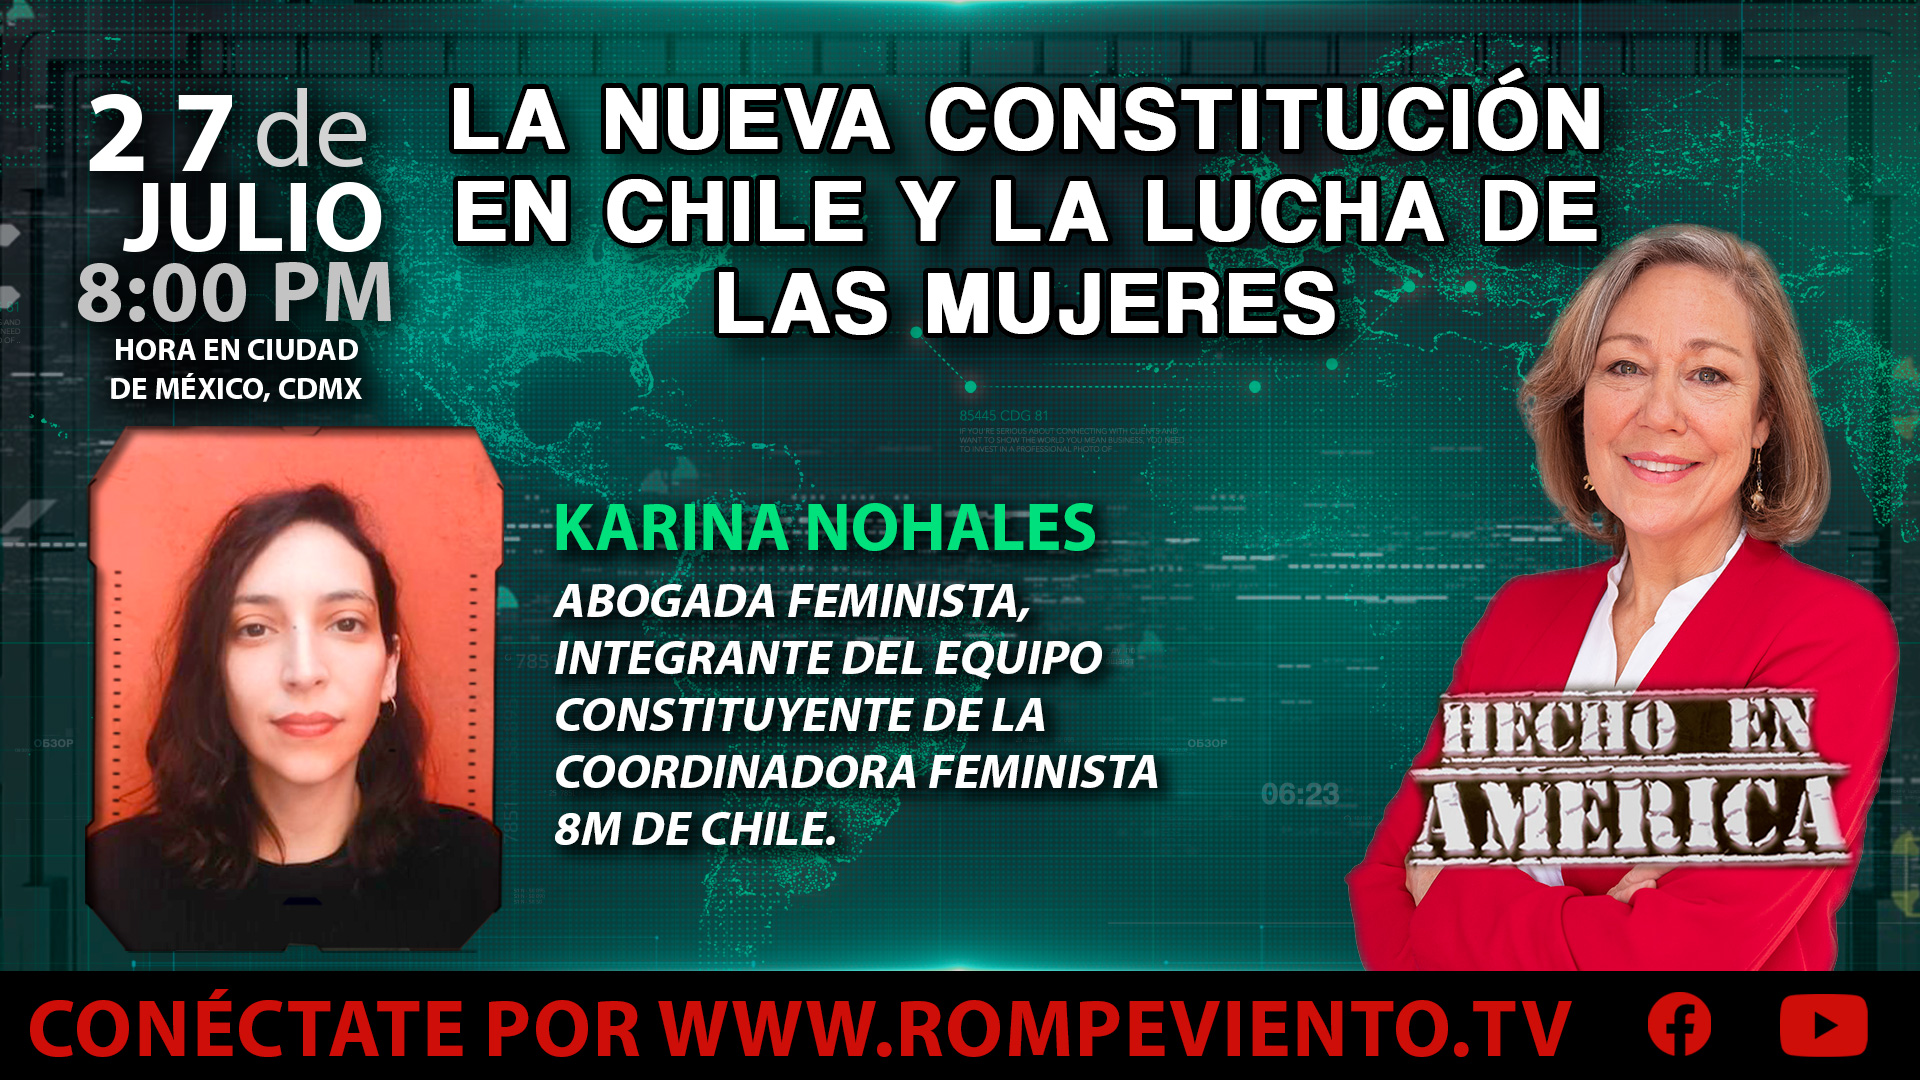 La nueva constitución en Chile y la lucha de las mujeres - Hecho en América